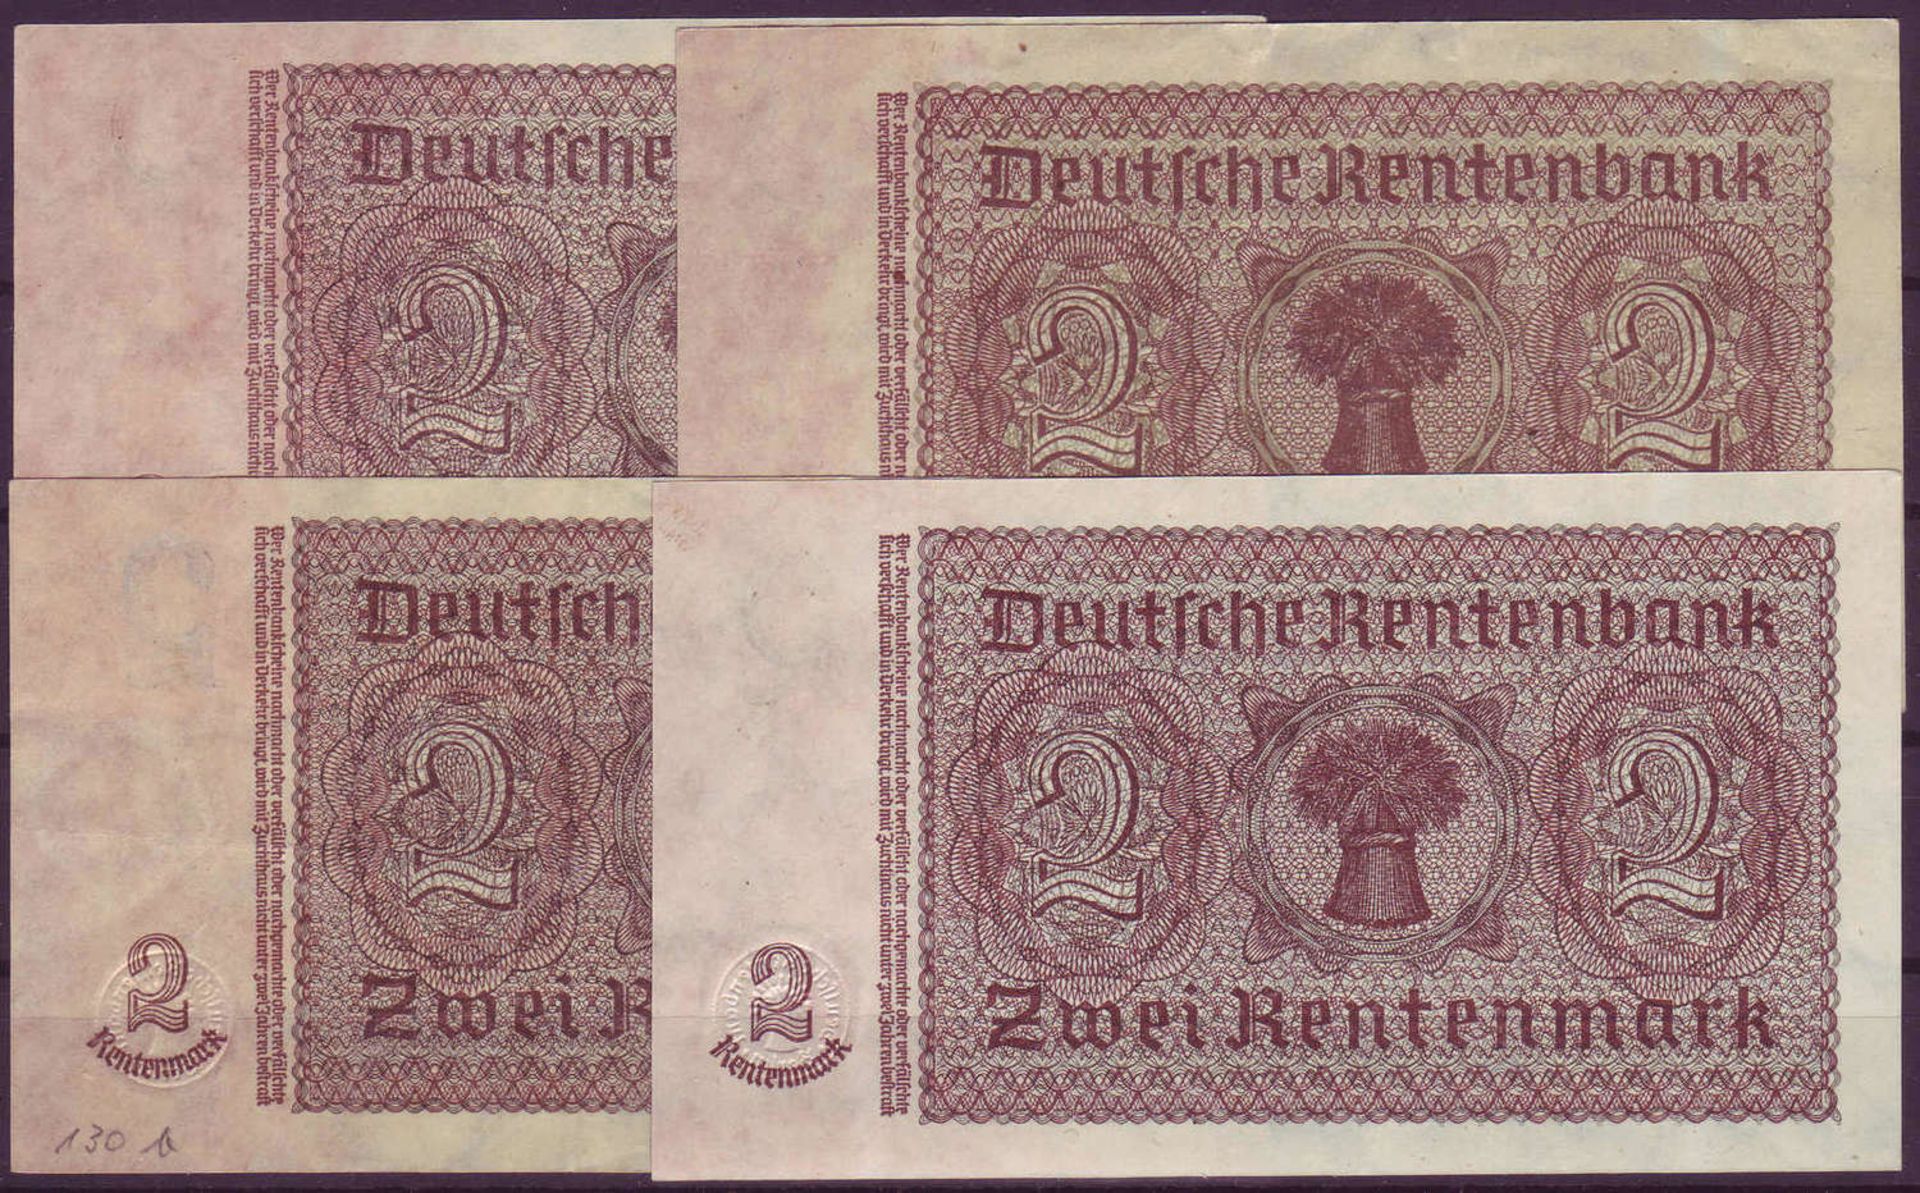 Drittes Reich, Deutsche Rentenbank 1934 - 37. Kleines Lot con 2.- Rentenmark - Scheinen (4 Stück). - Bild 2 aus 2